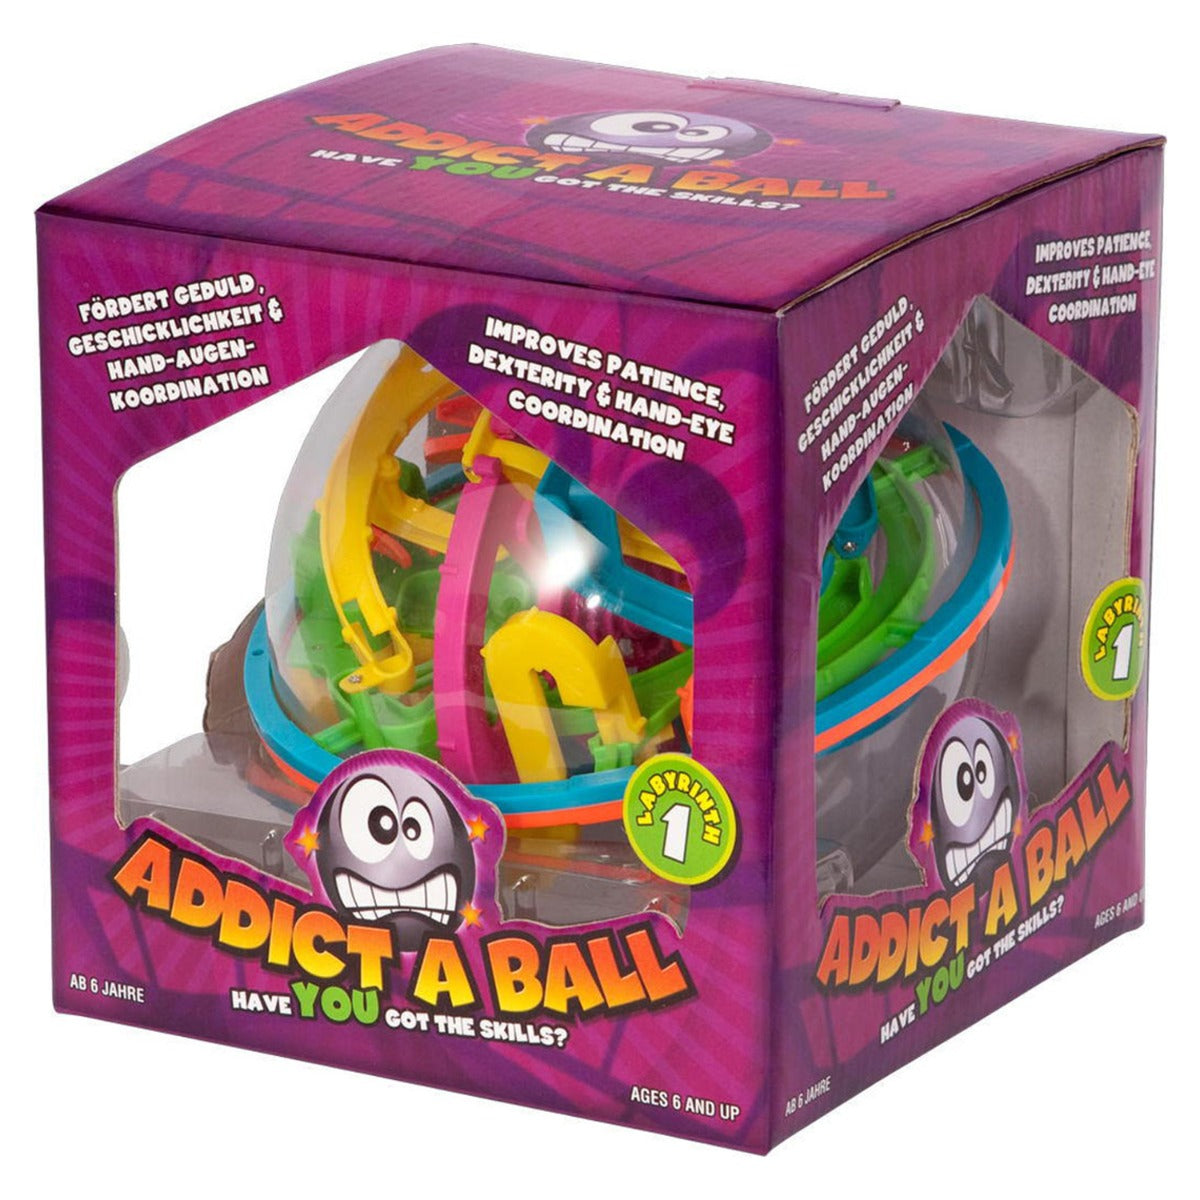 Addict A Ball 20 cm Labyrinth Kugelspiel 3D Kugellabyrinth Ball